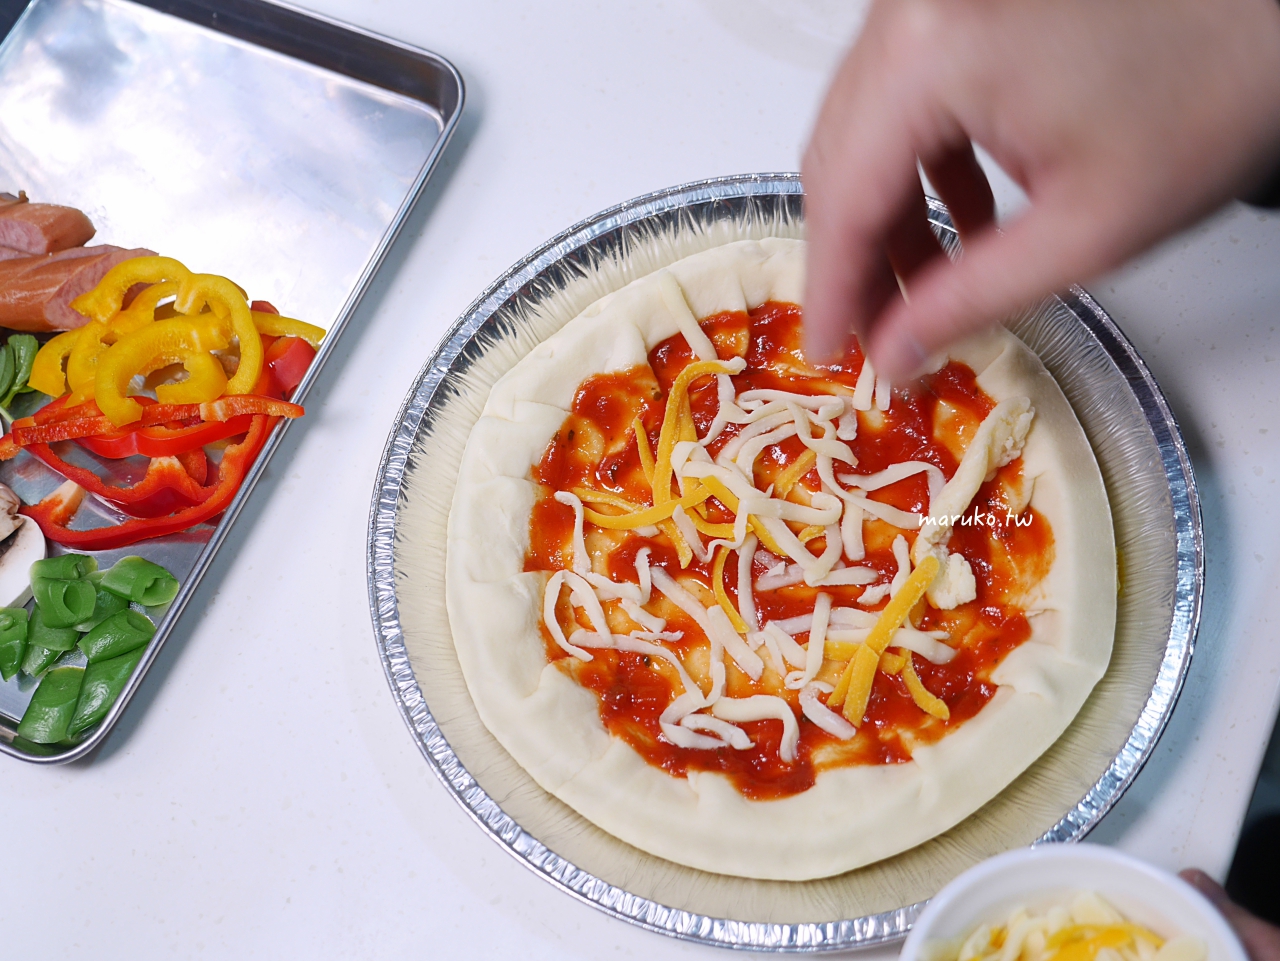 【食譜】芝心披薩 美式披薩店最受歡迎的芝心披薩起司麵團包法 @Maruko與美食有個約會